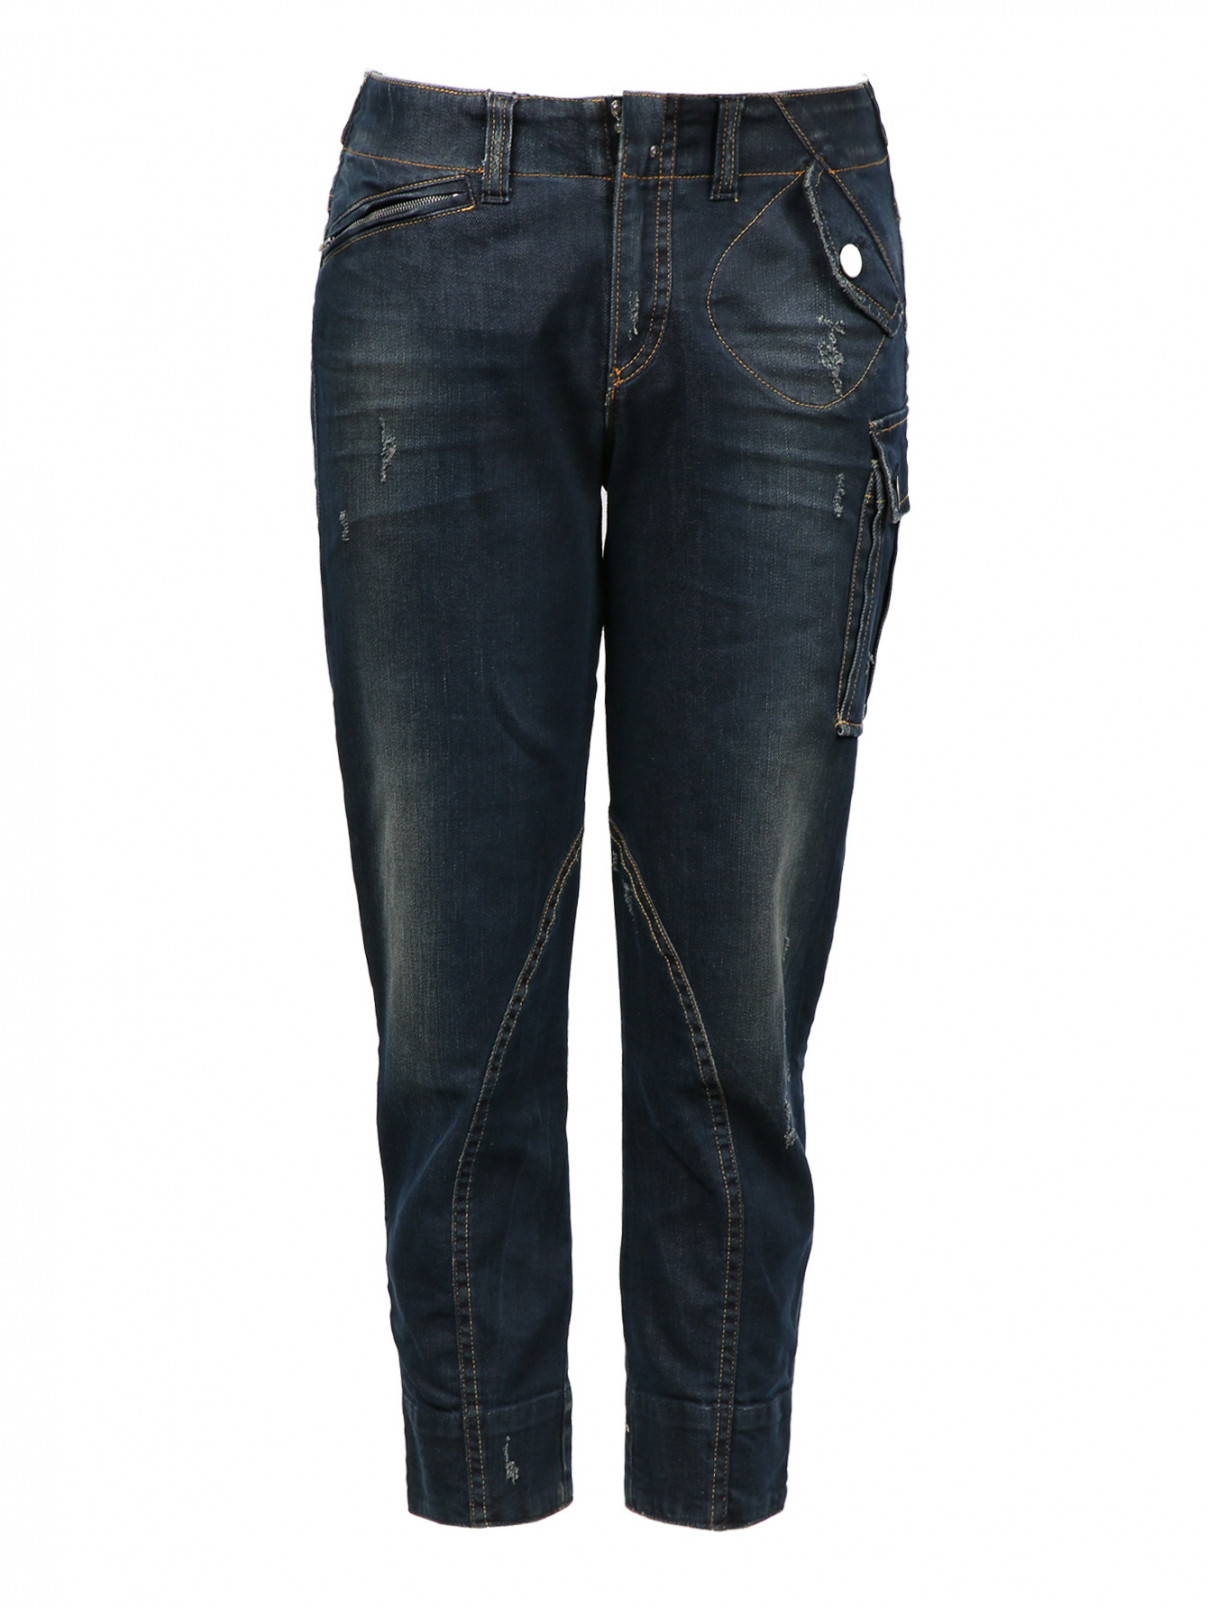 Укороченные джинсы с накладными карманами MC Alexander McQueen  –  Общий вид  – Цвет:  Синий